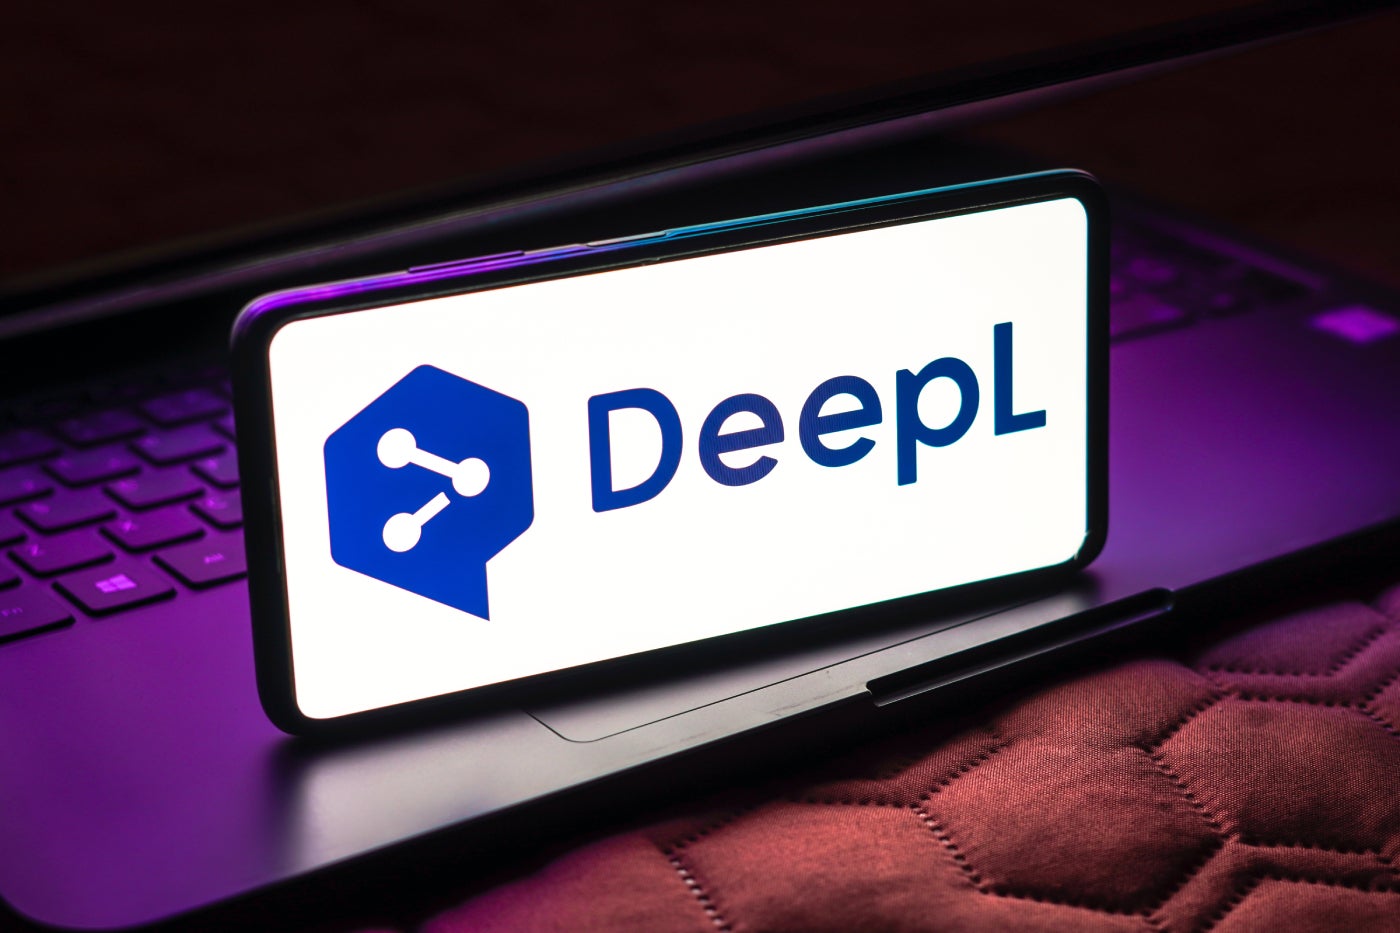 El pionero de la inteligencia artificial en idiomas, DeepL, se dirige a las empresas de APAC con opciones de traducción profesionales